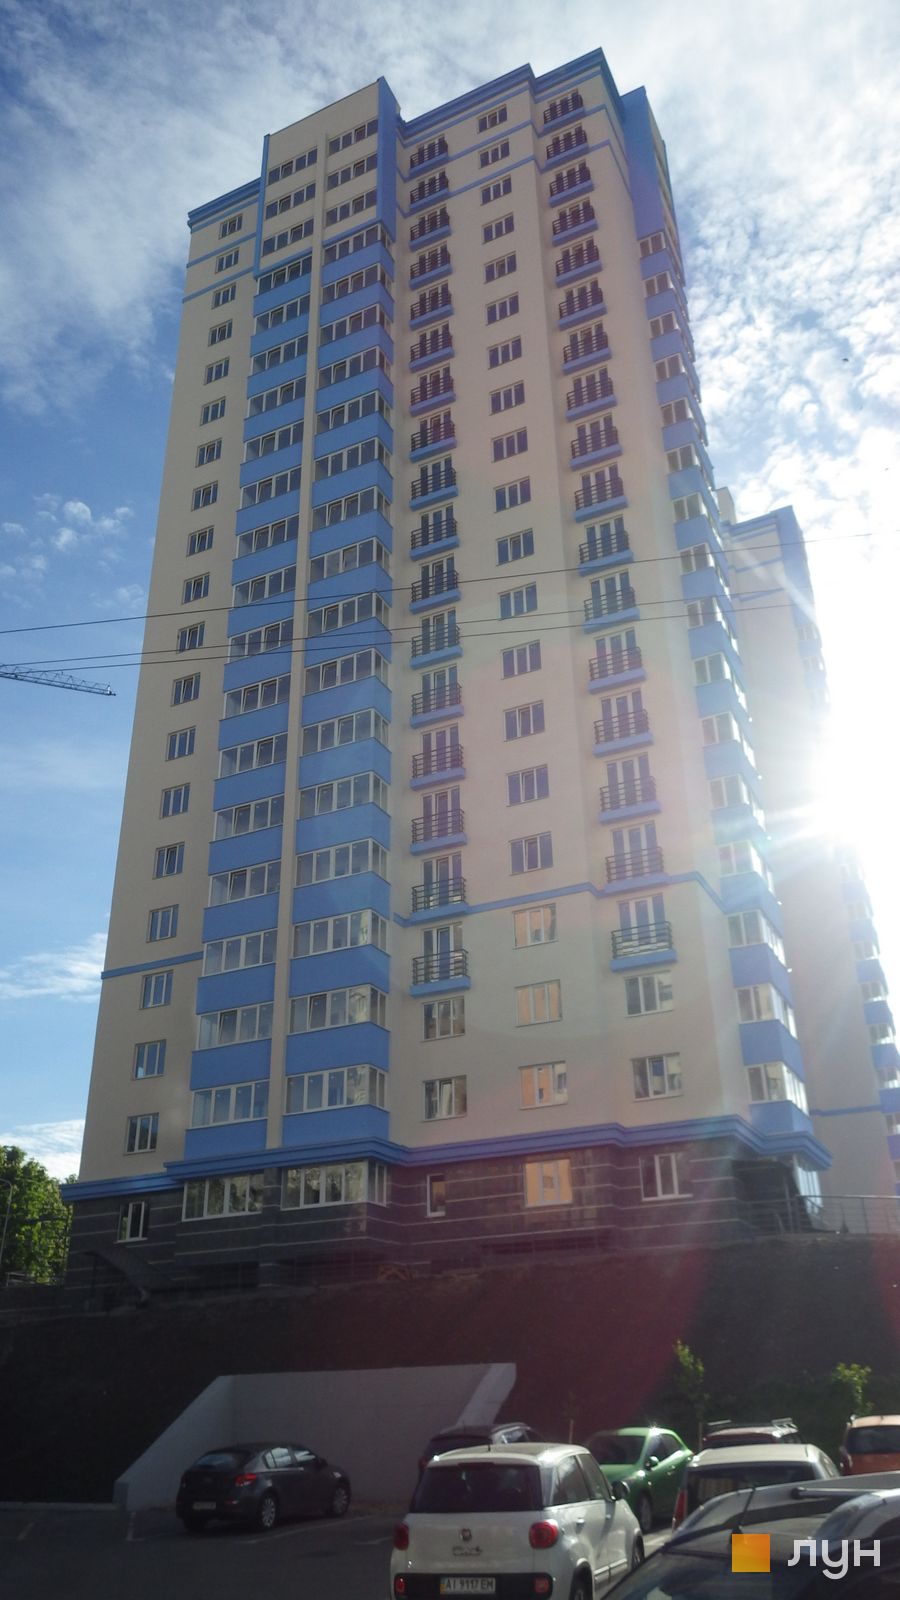 Моніторинг будівництва ЖК Деміївка - Ракурс 7, травень 2017